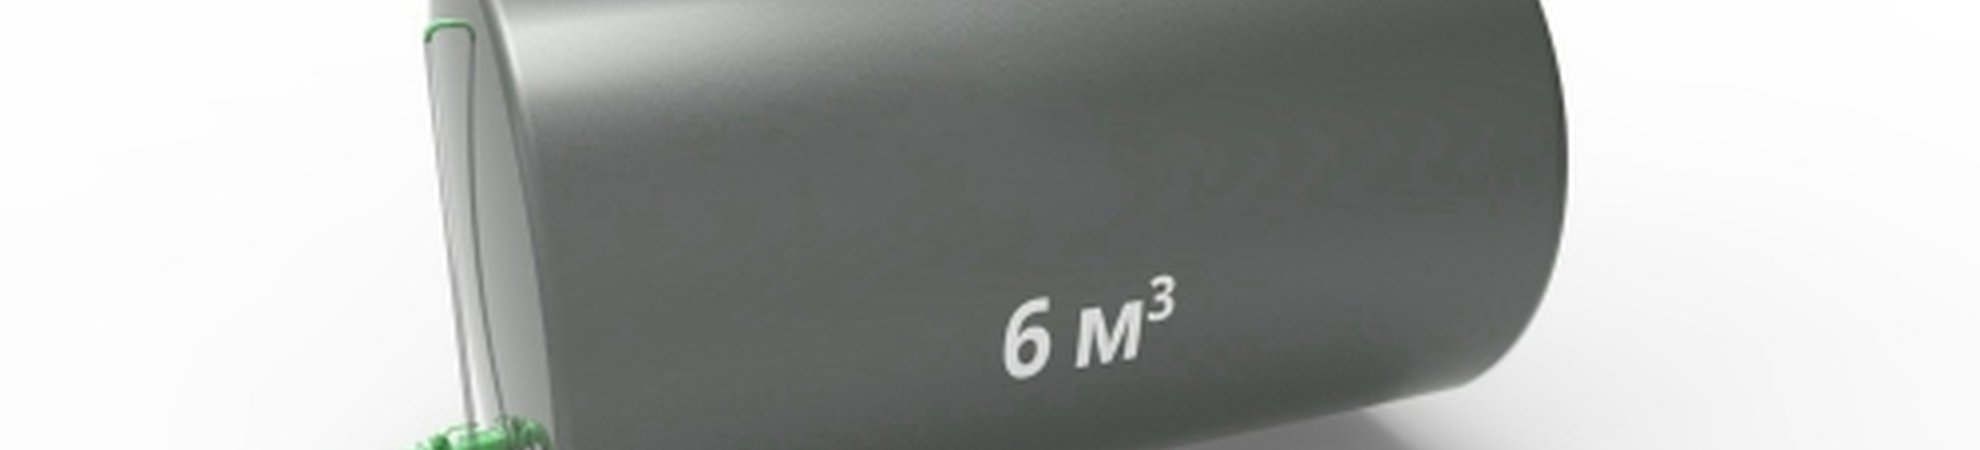 Емкость 6 м3 — РГС6